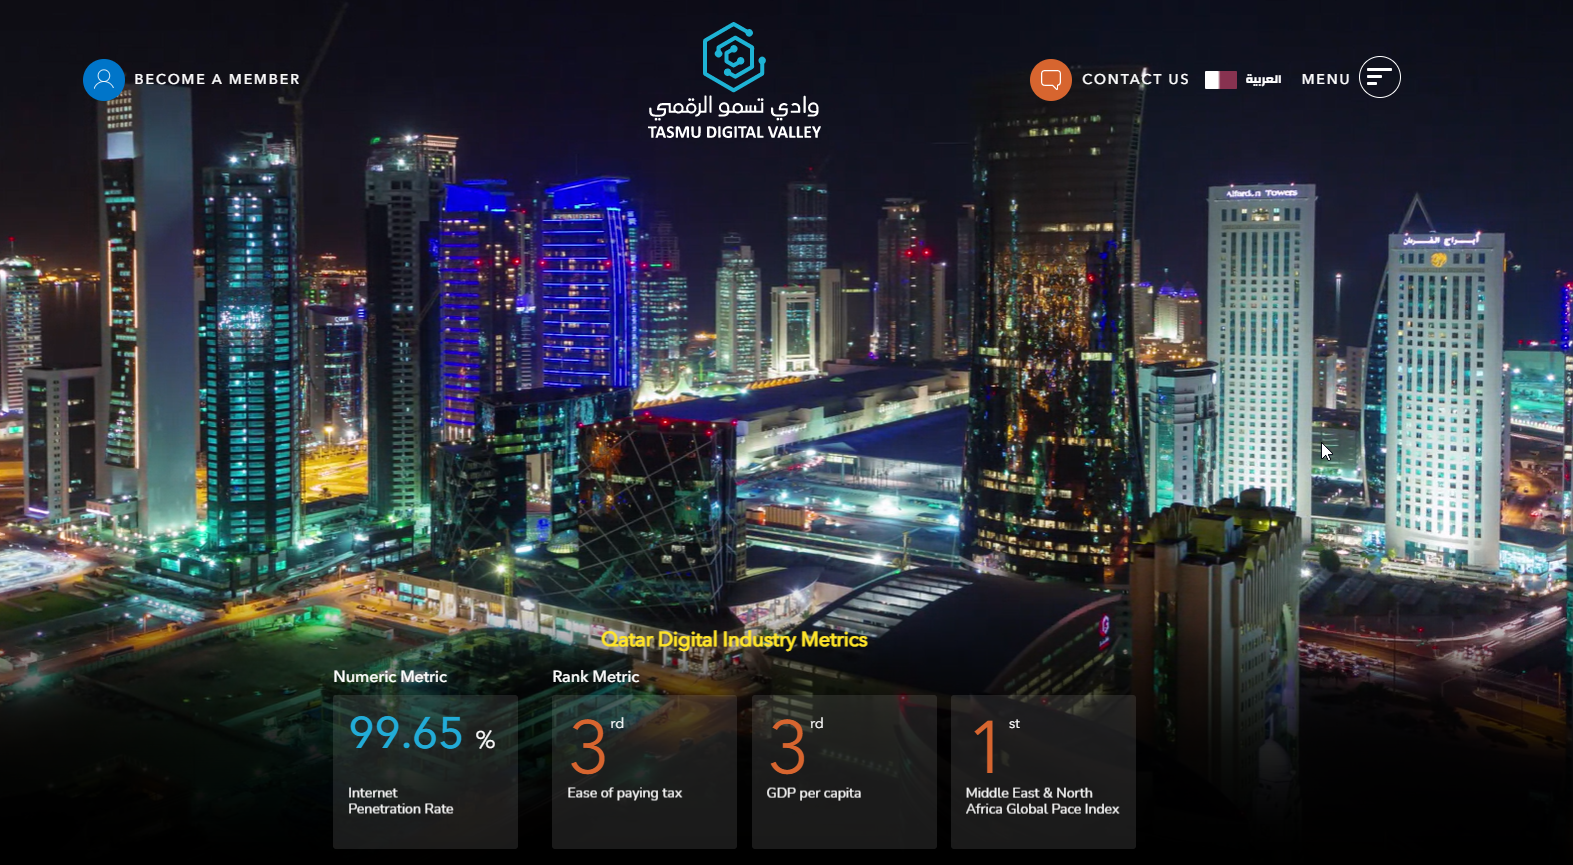 Startups in Katar (startups in qatar)